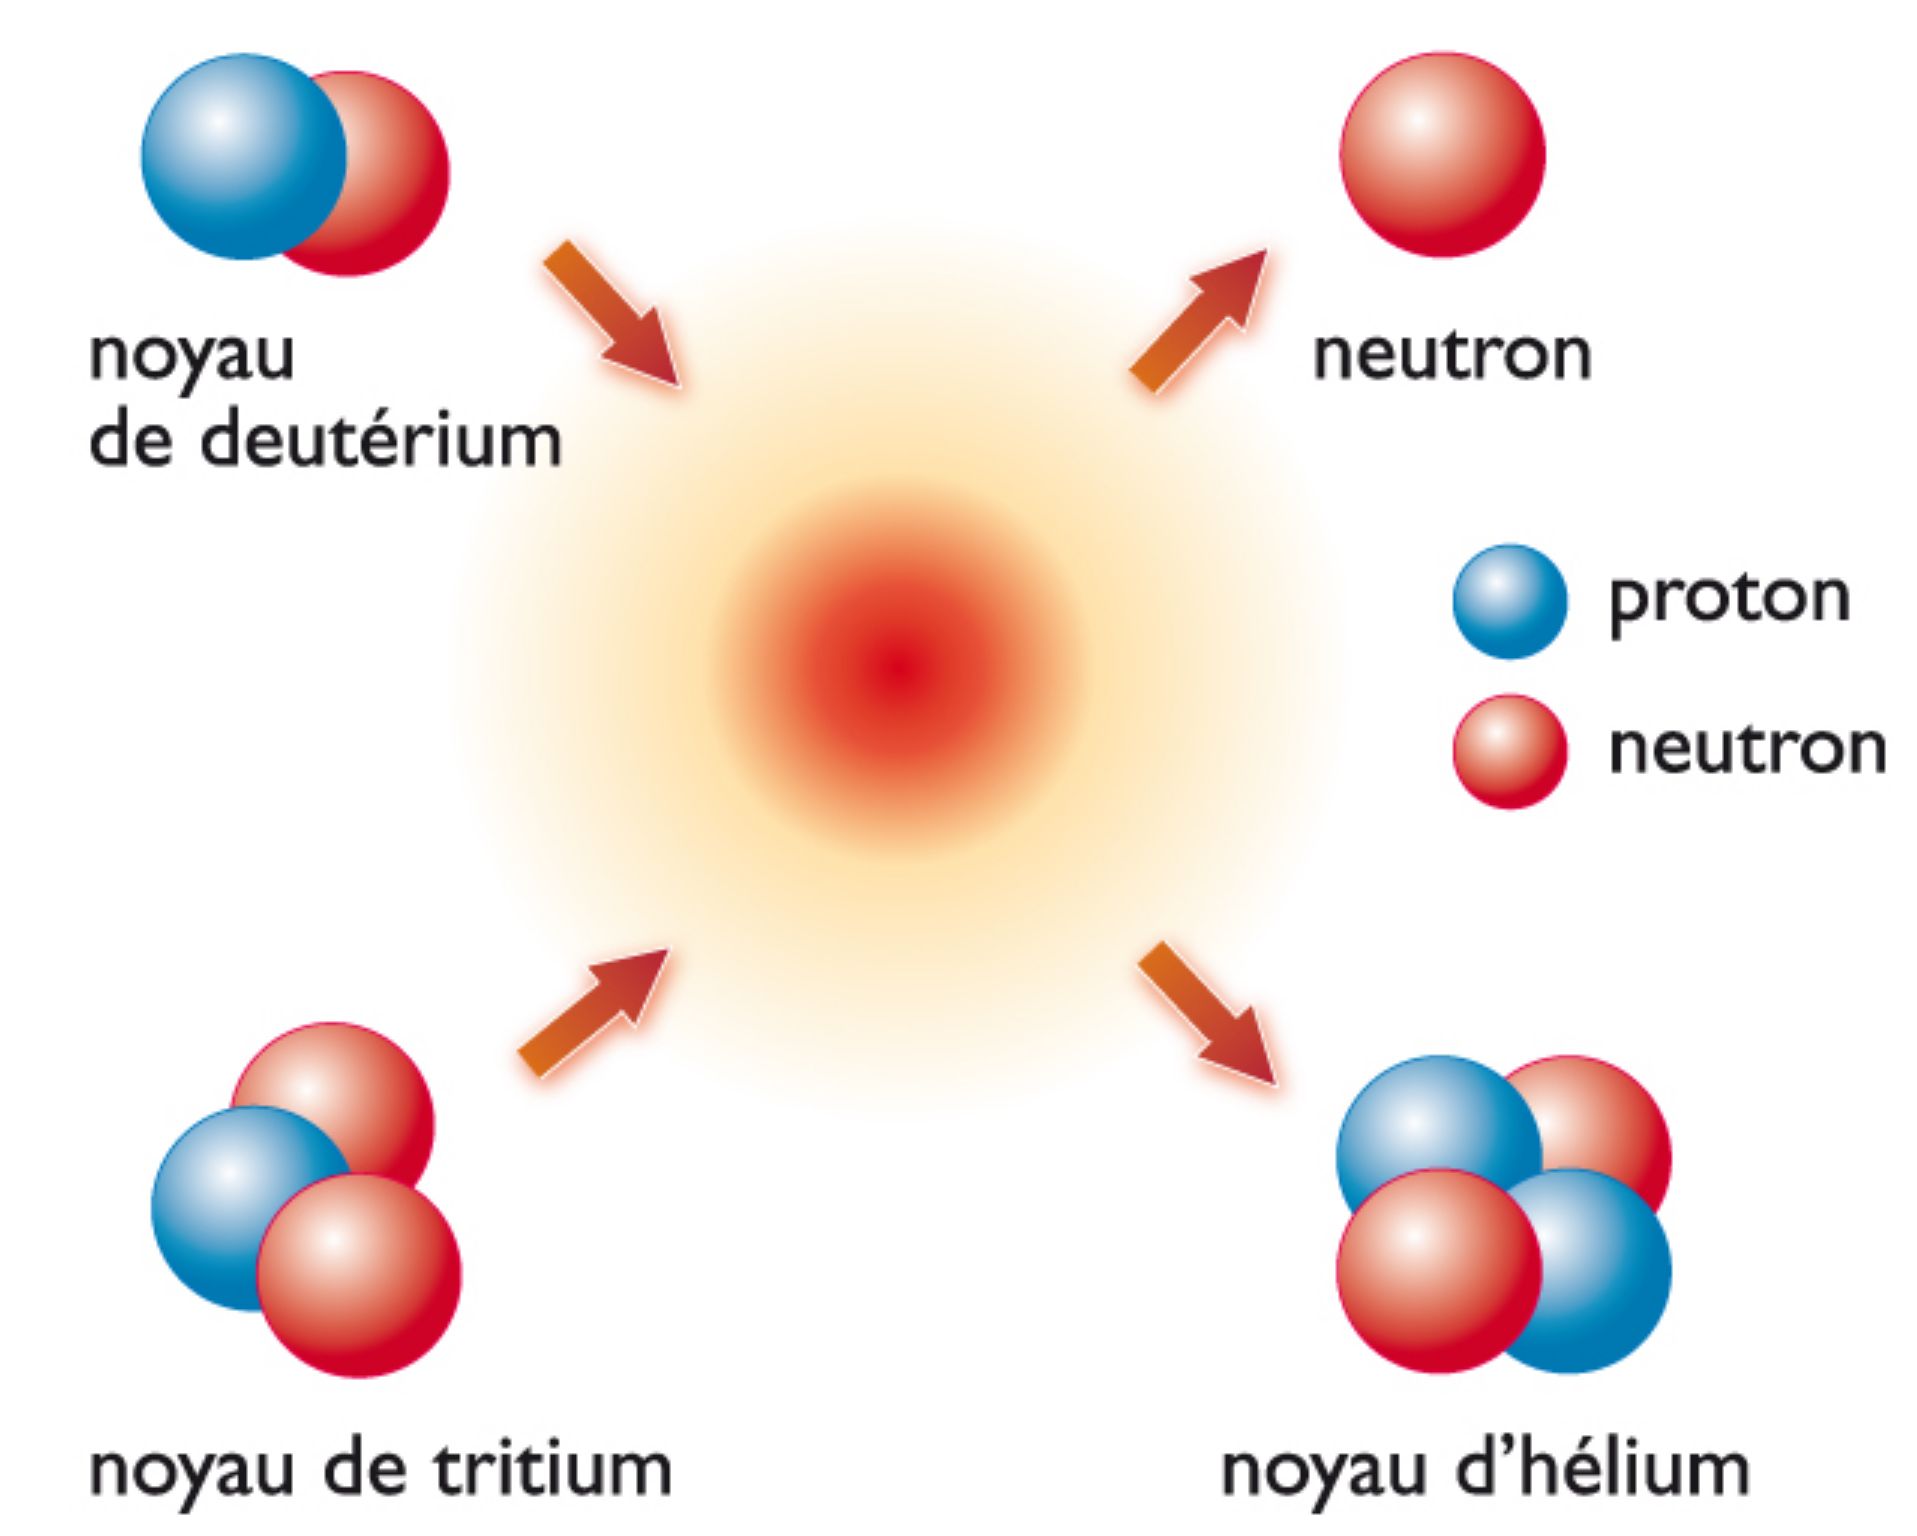 principe de la fusion nucléaire à partir de noyaux d’hydrogène